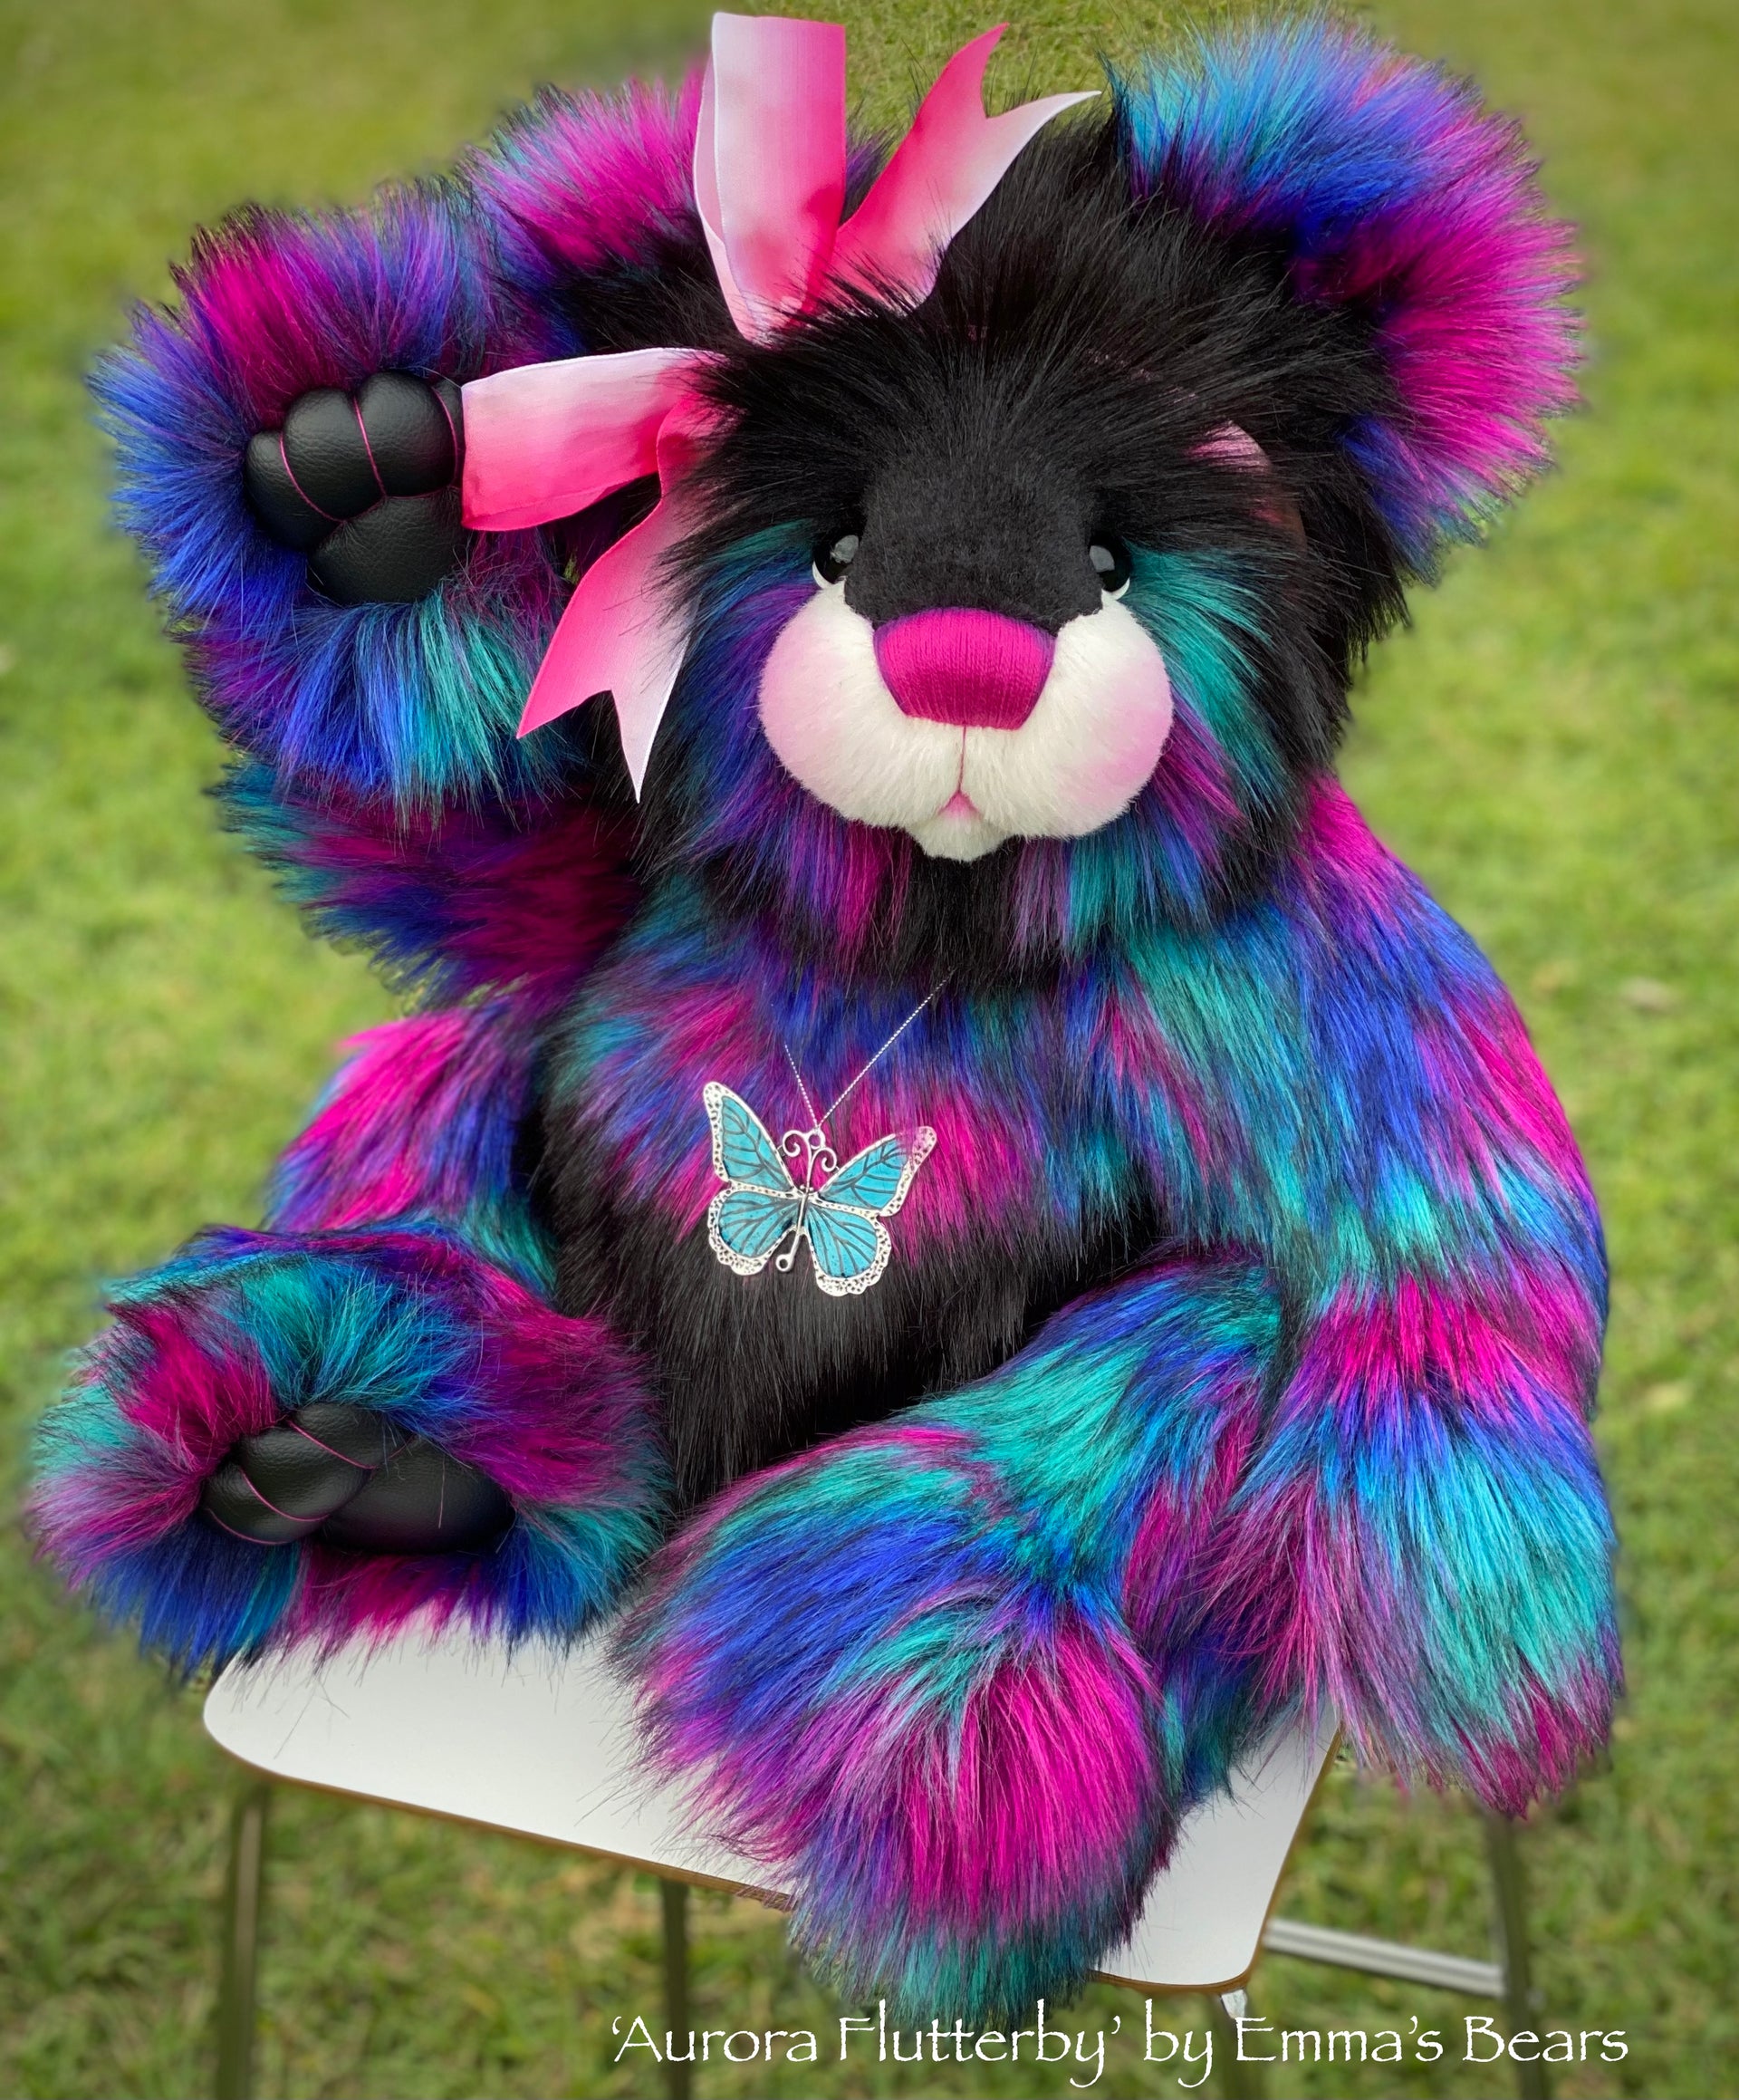 Aurora Flutterby - 29" Faux Fur and Alpaca Artist Bear by Emmas Bears - OOAK